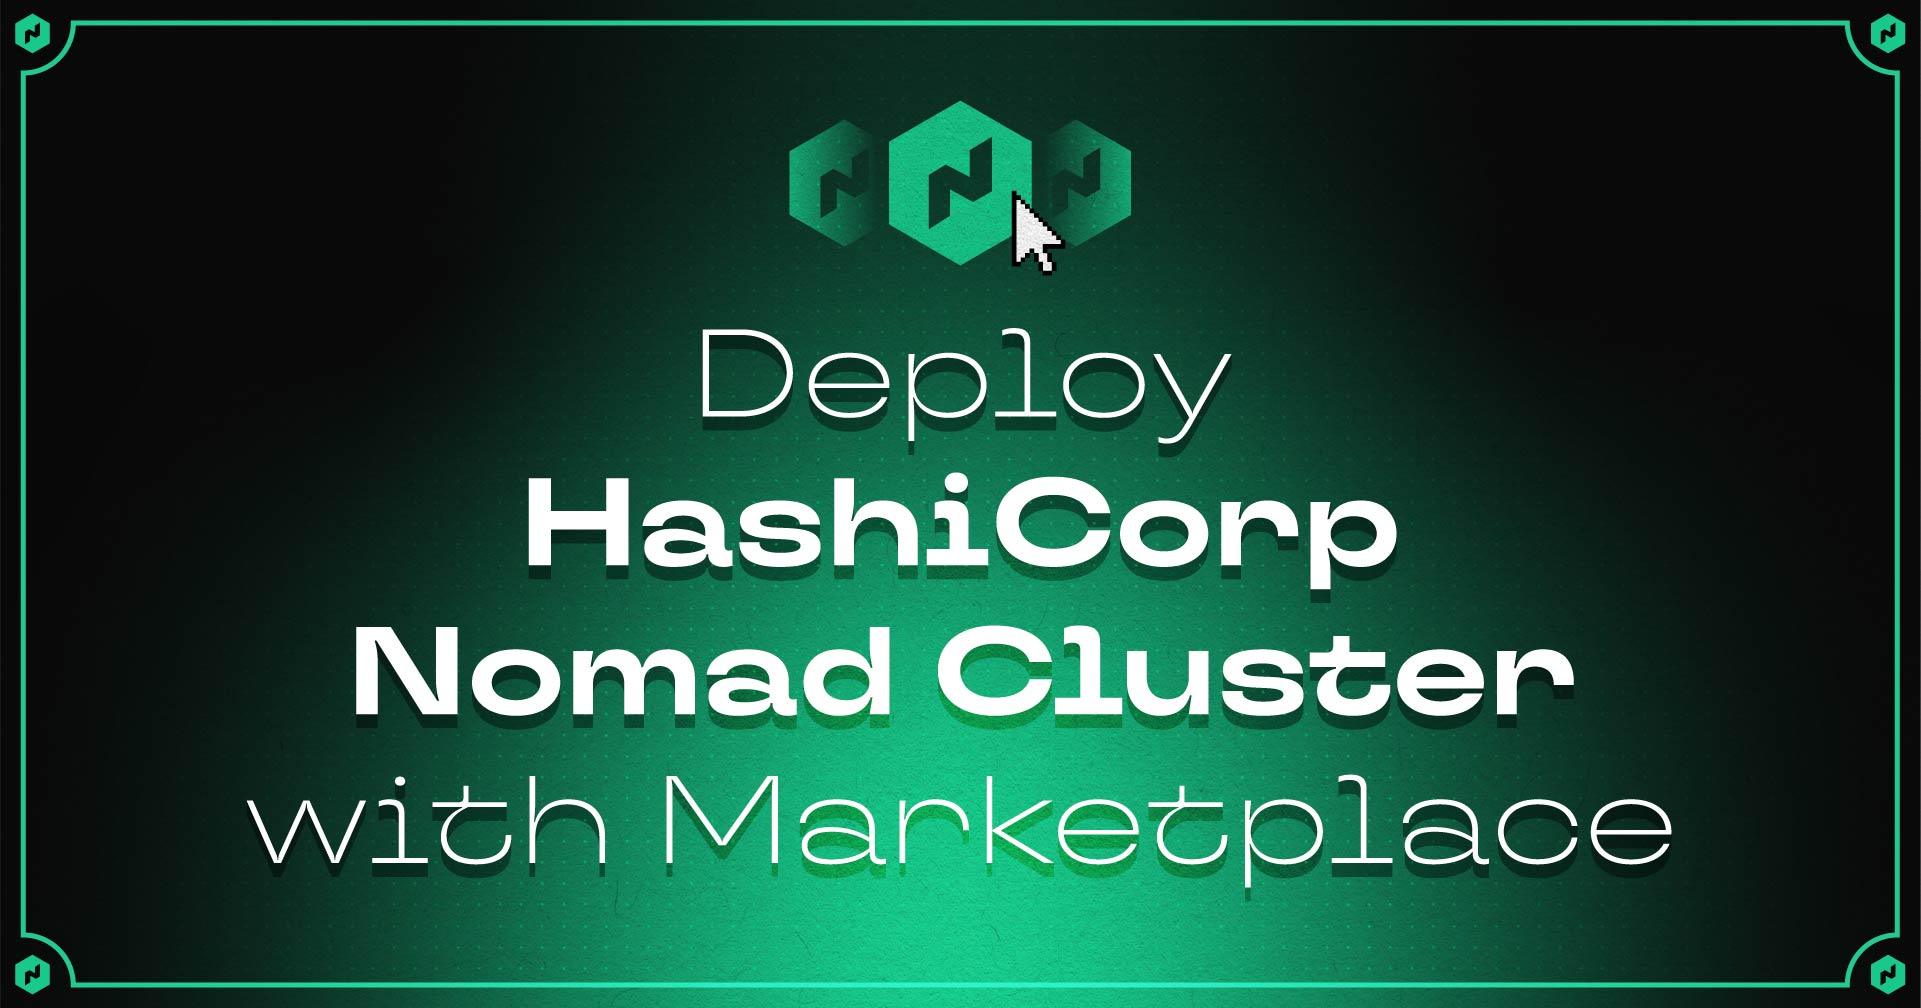 Implante o HashiCorp Nomad Cluster com o Marketplace!